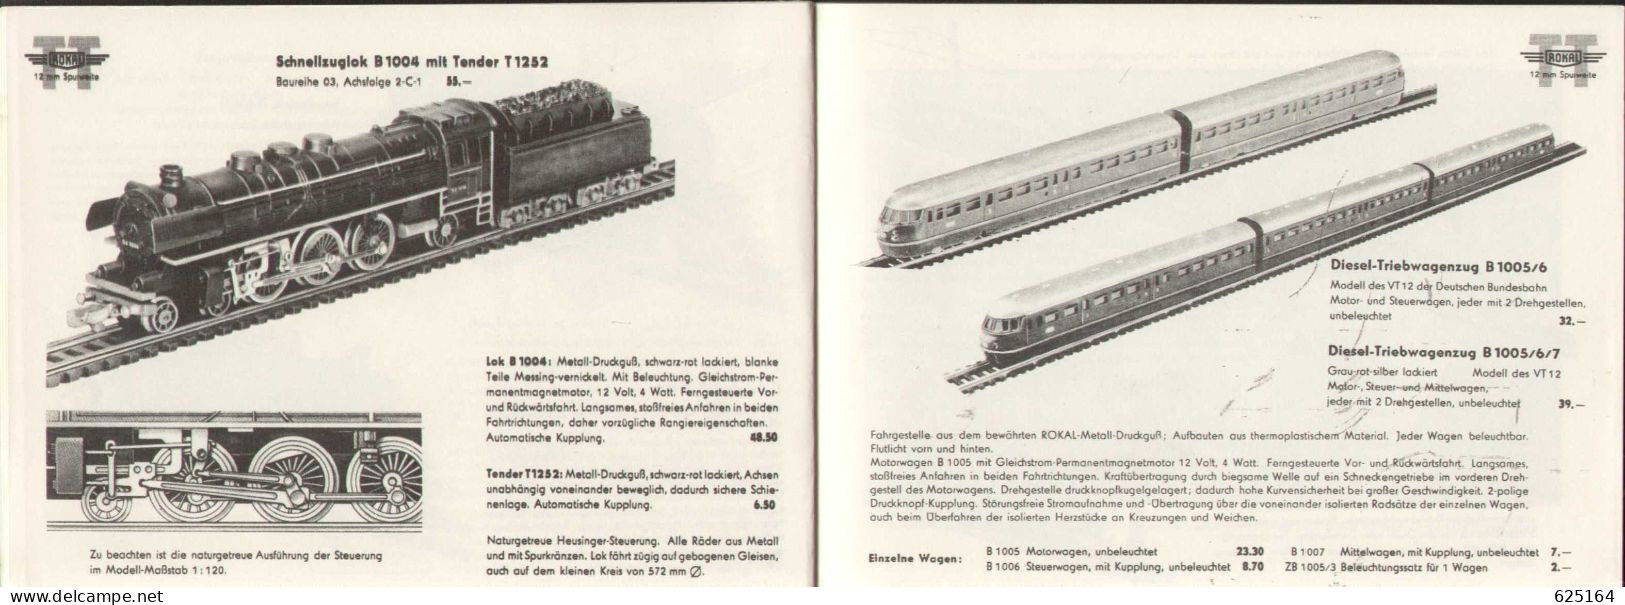 Catalogue ROKAL 1957/3 Modellbahn Katalog TT 1:120 12 Mm. - German